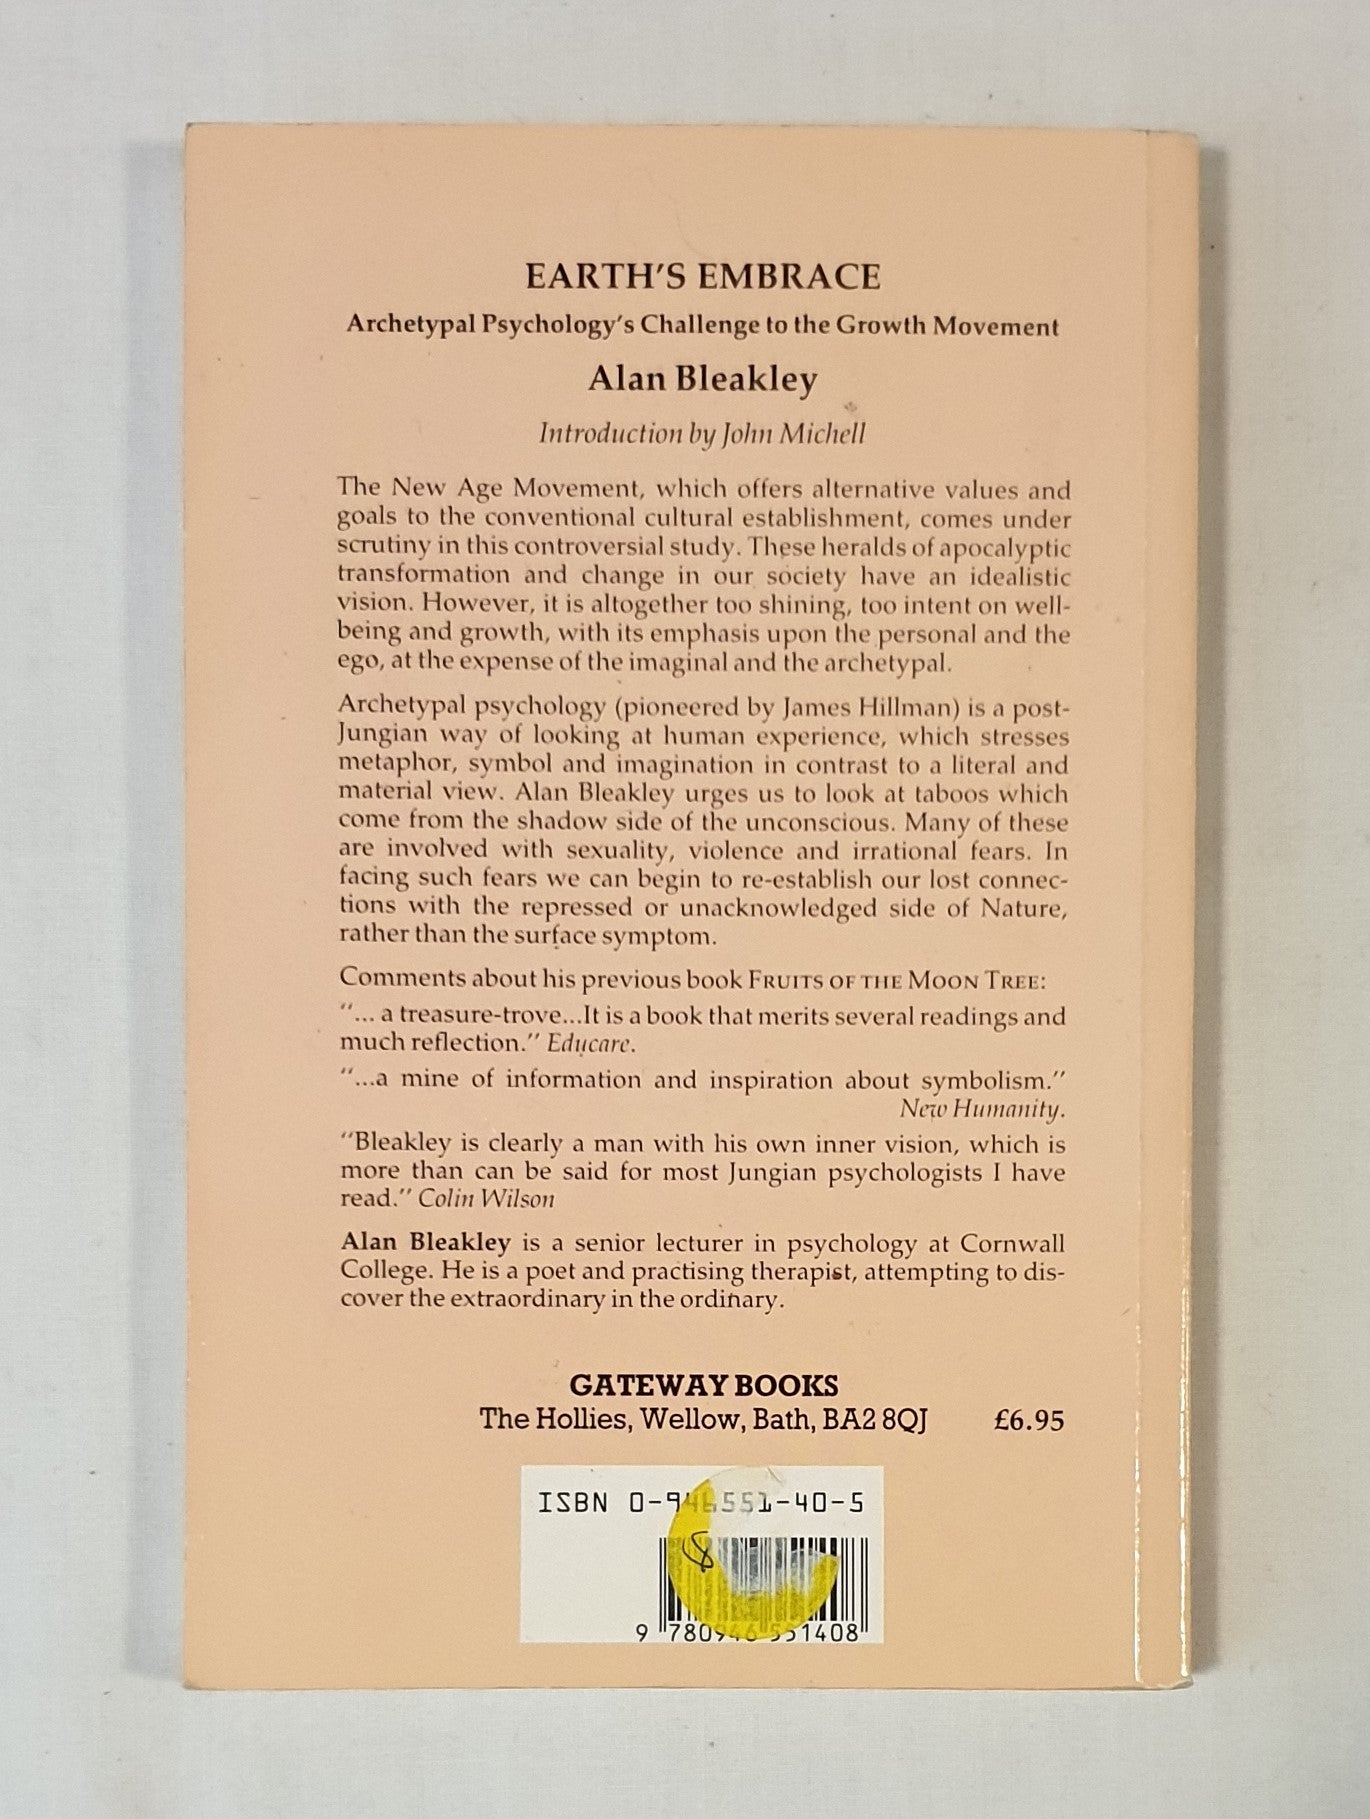 Earth's Embrace by Alan Bleakley